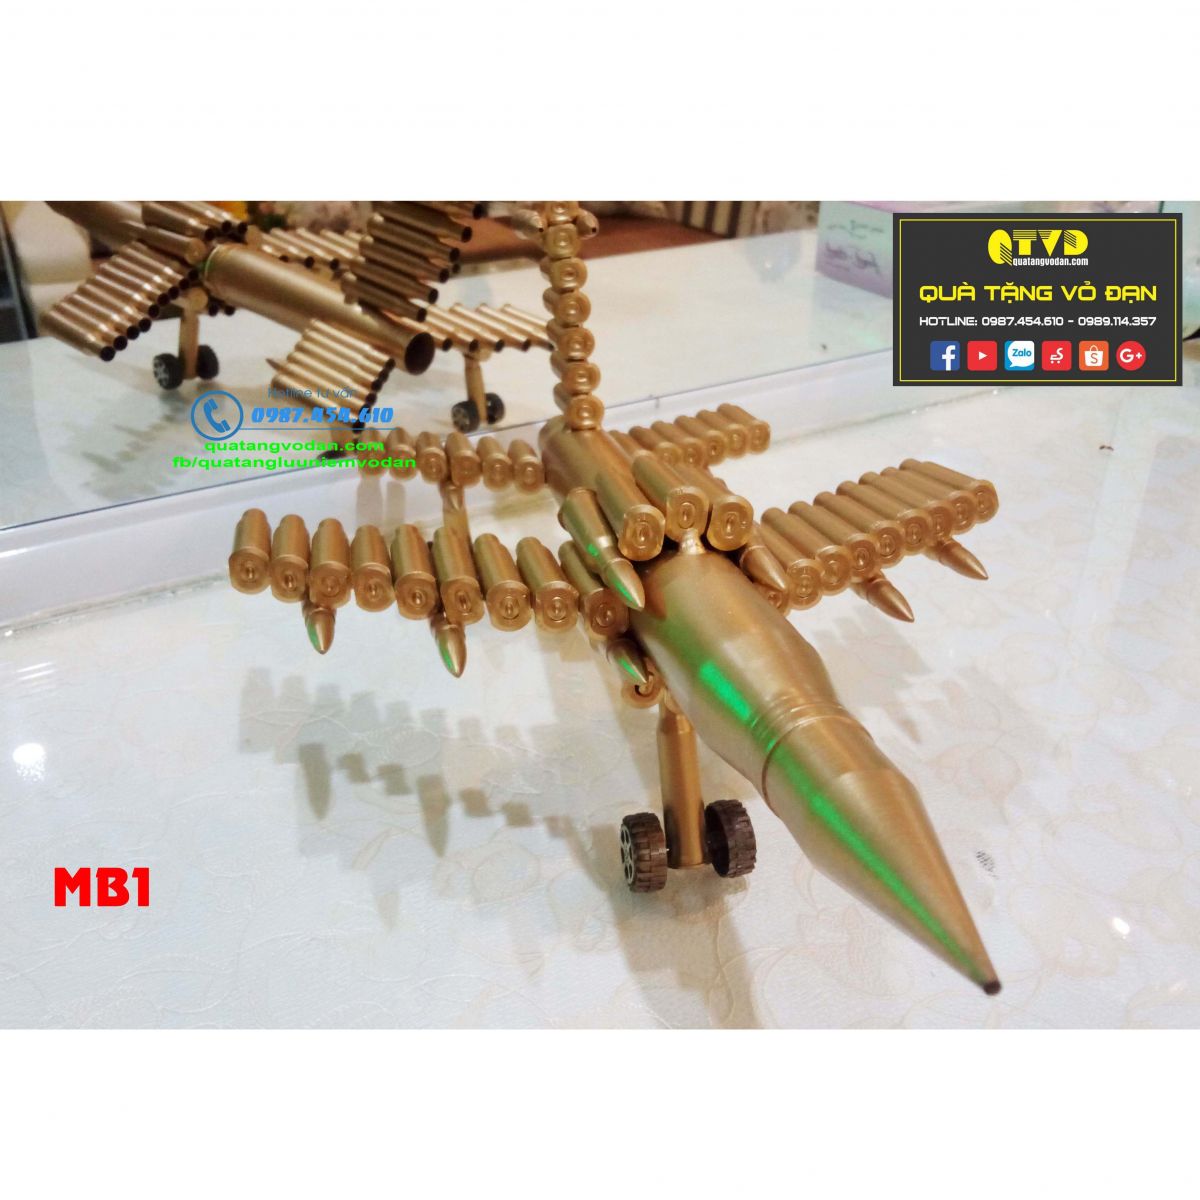 Máy bay mô hình bằng vỏ đạn MB1